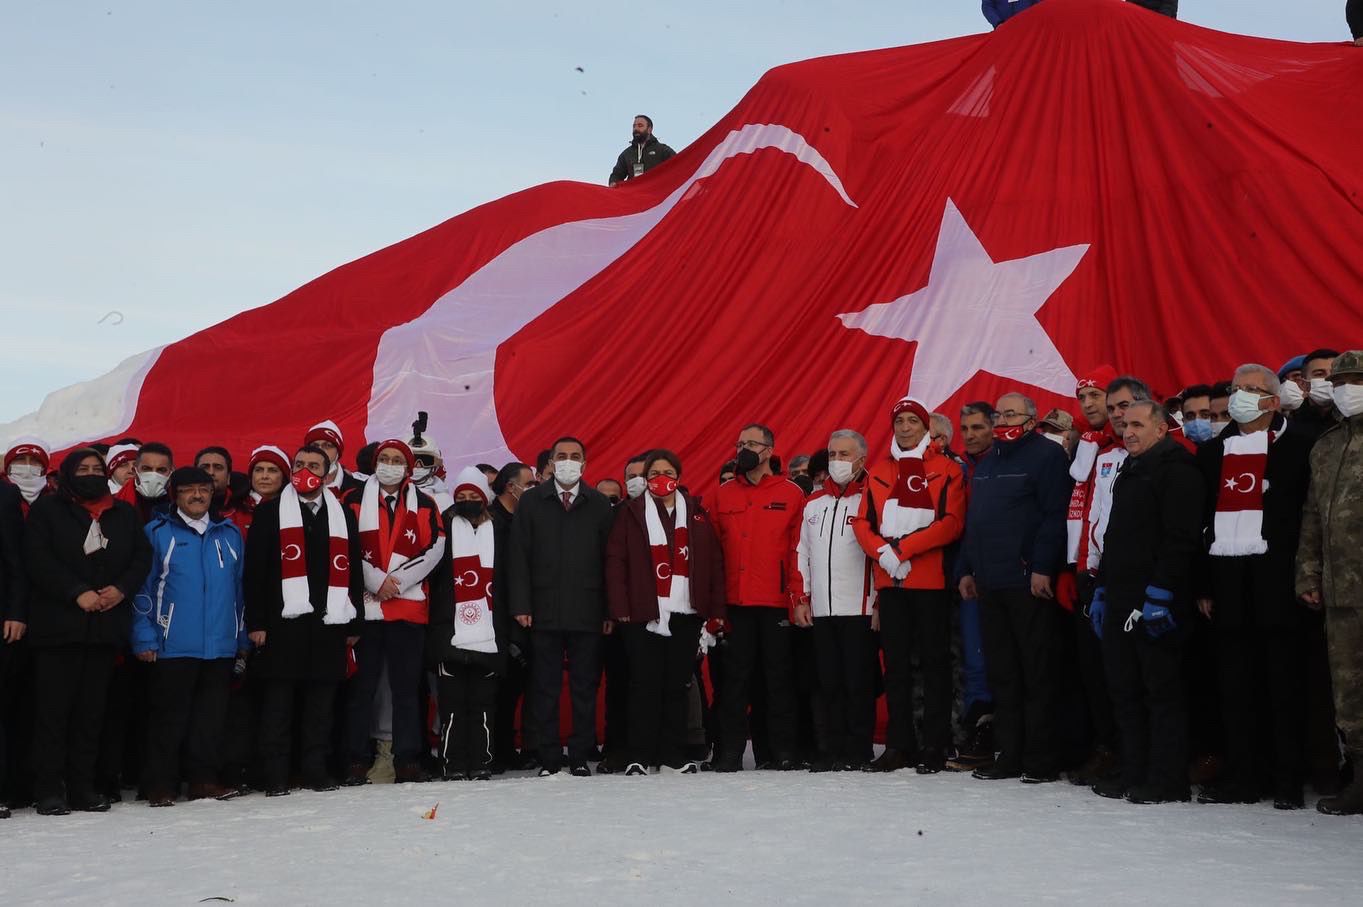 Bakanımız Derya Yanık Sarıkamış Şehitlerini Temsilen Yapılan Kardan Heykellerin Açılışına Katıldı 